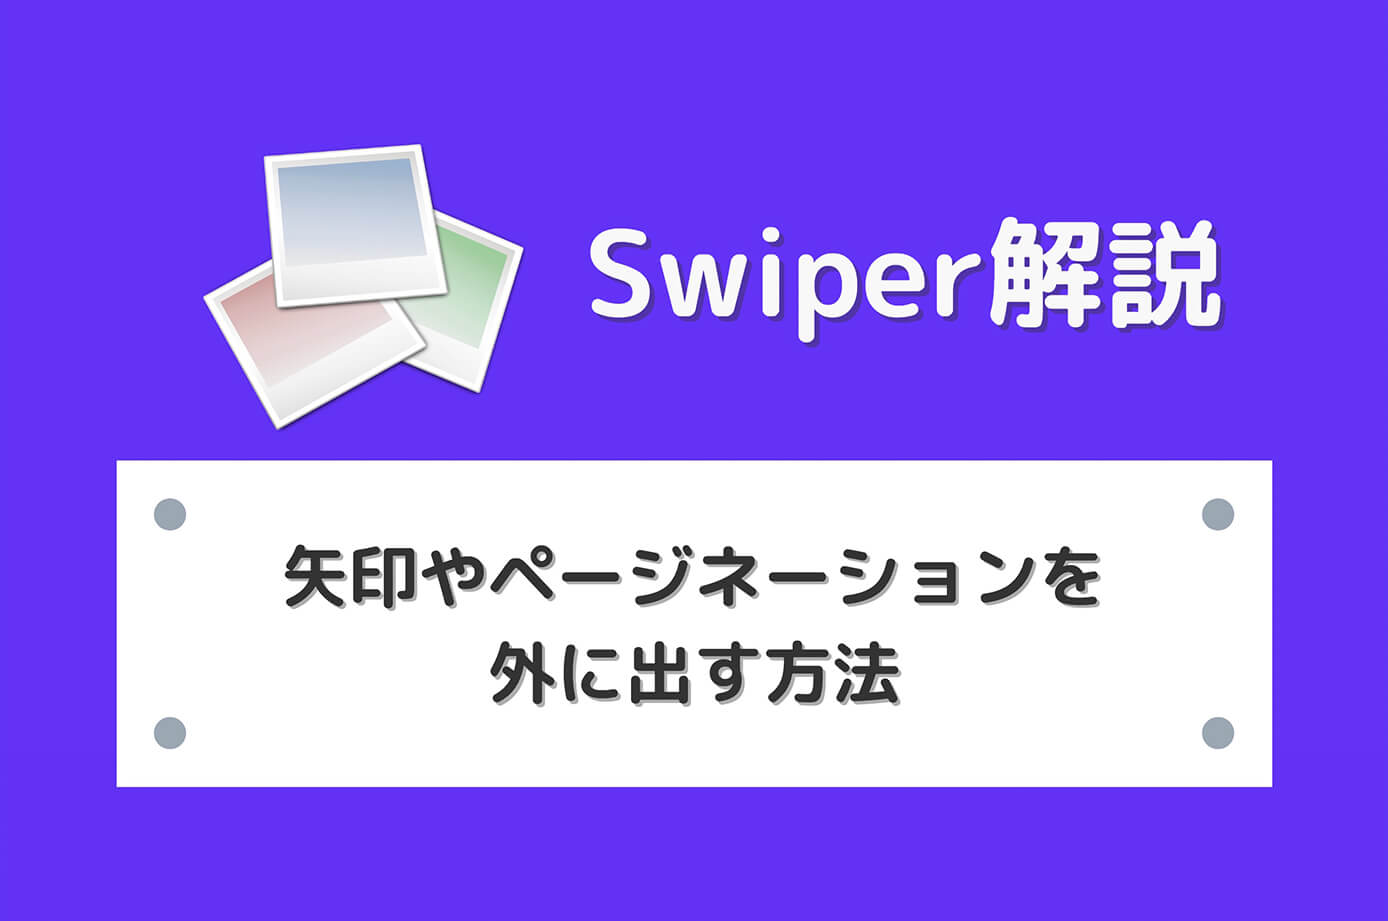 【Swiper】スライダーの矢印やページネーションを外に出す方法